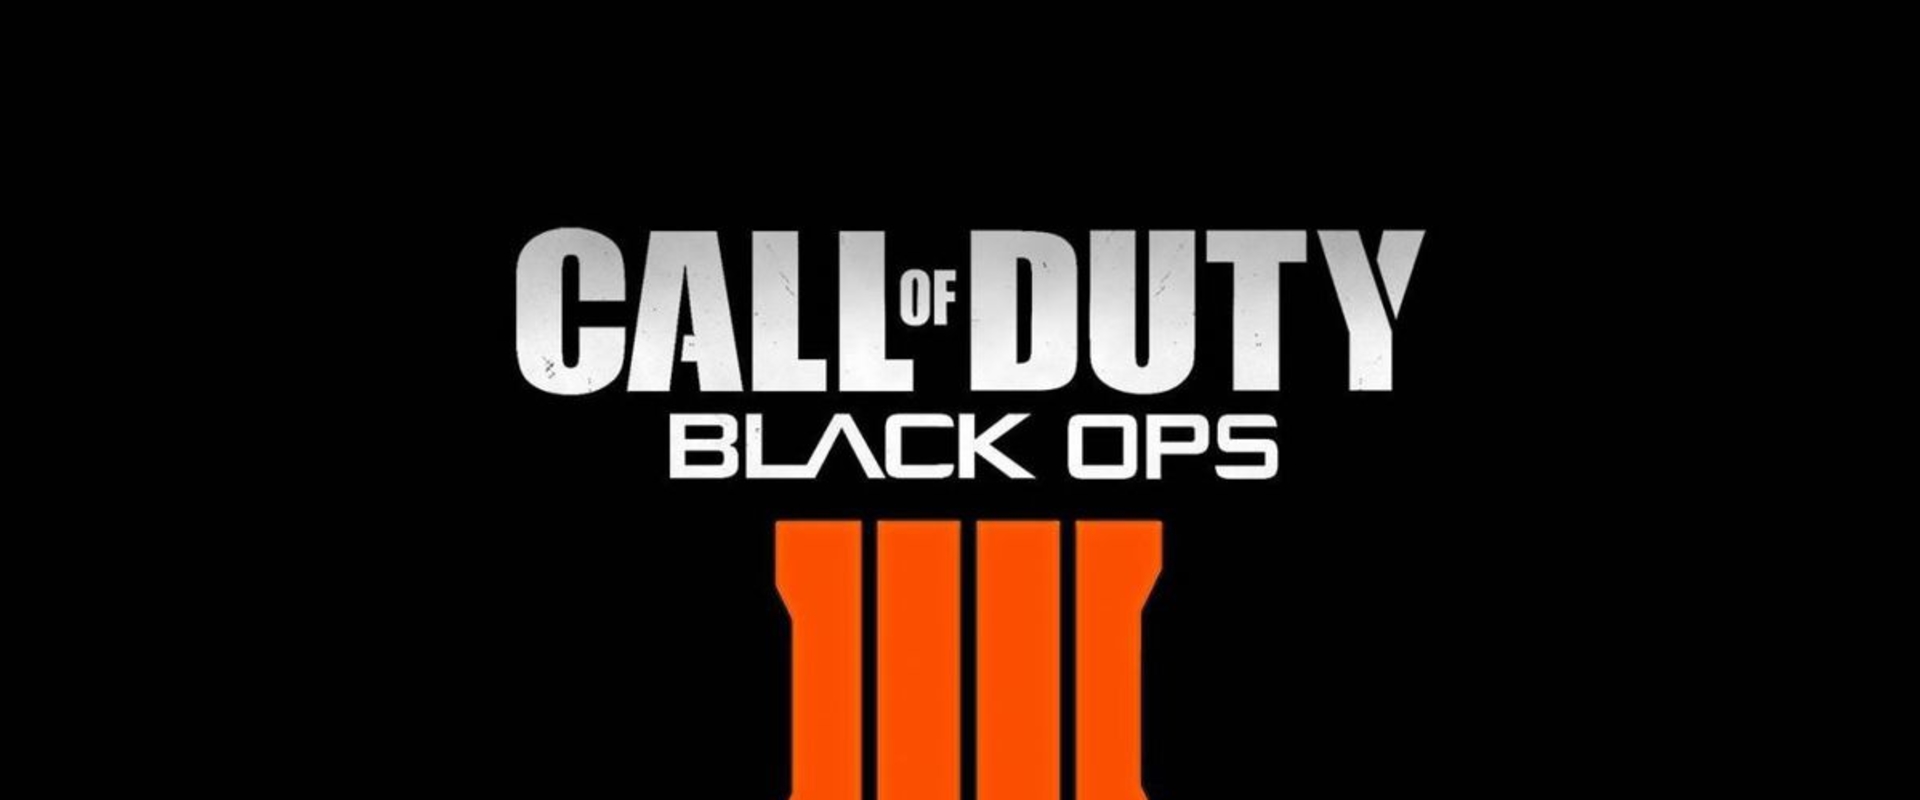 Így fog kinézni a Call of Duty: Black Ops 4 doboza